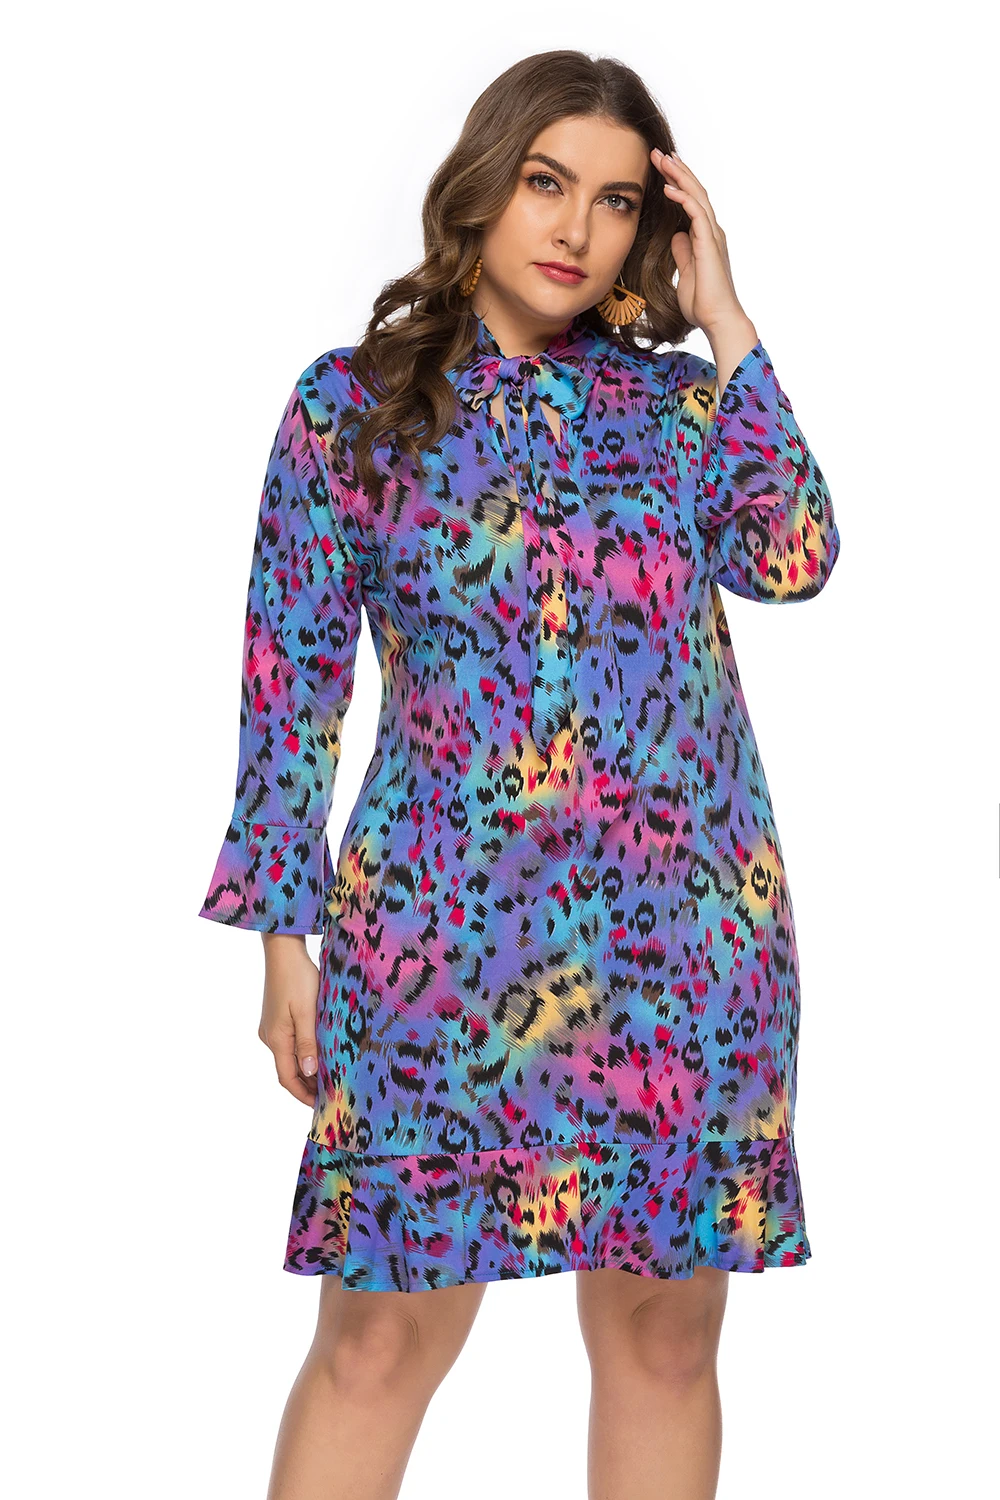 DUOUPA весной и летом в Европе и большой Размеры Для женщин v-образным вырезом лук Leopard Ruffled платье миди SQ0118